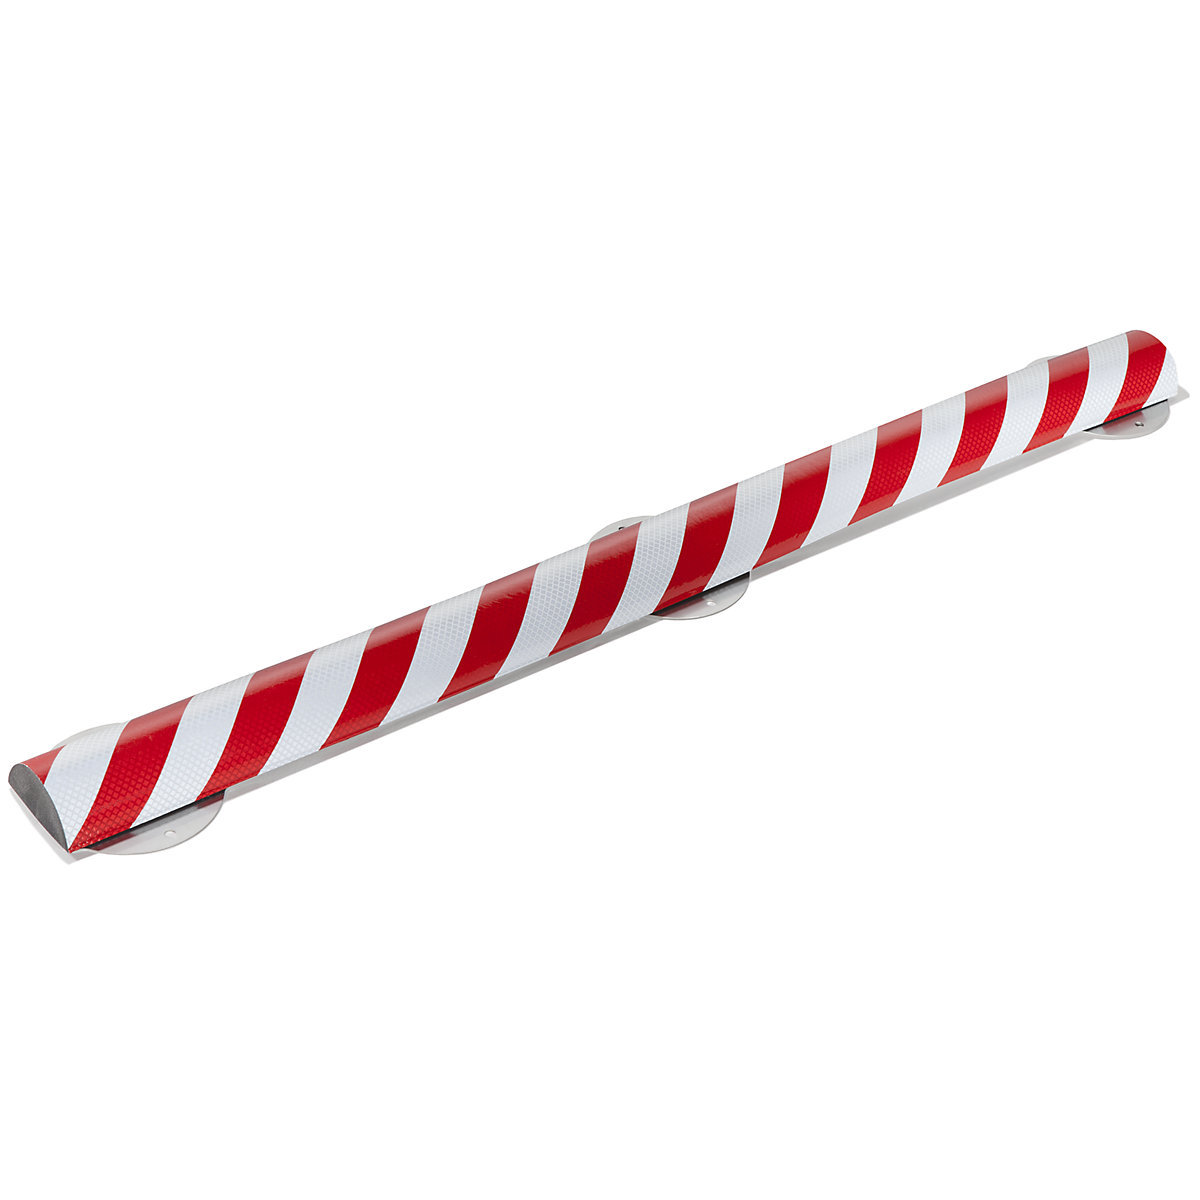 Protection des surfaces Knuffi® avec rail de montage – SHG, type C+, pièce de 1 m, rouge / blanc rétro-réfléchissant